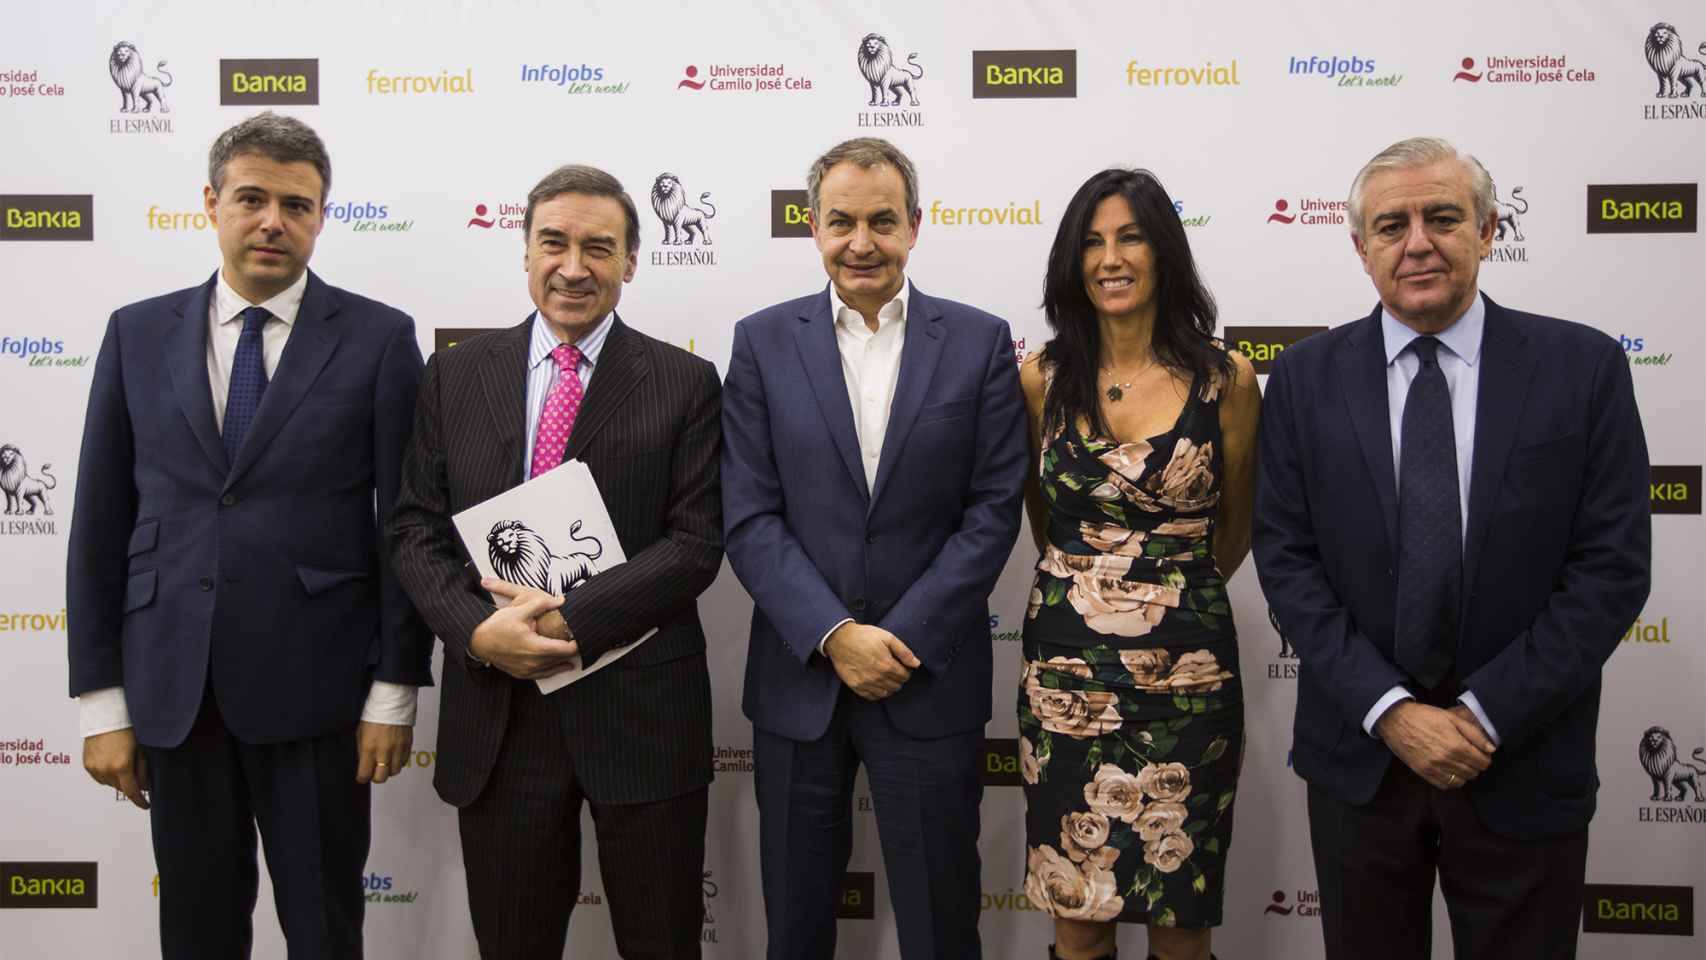 Gómez Frías, Pedro J. Ramírez, José Luis. R. Zapatero, Eva Fernández y Antonio Camuñas.